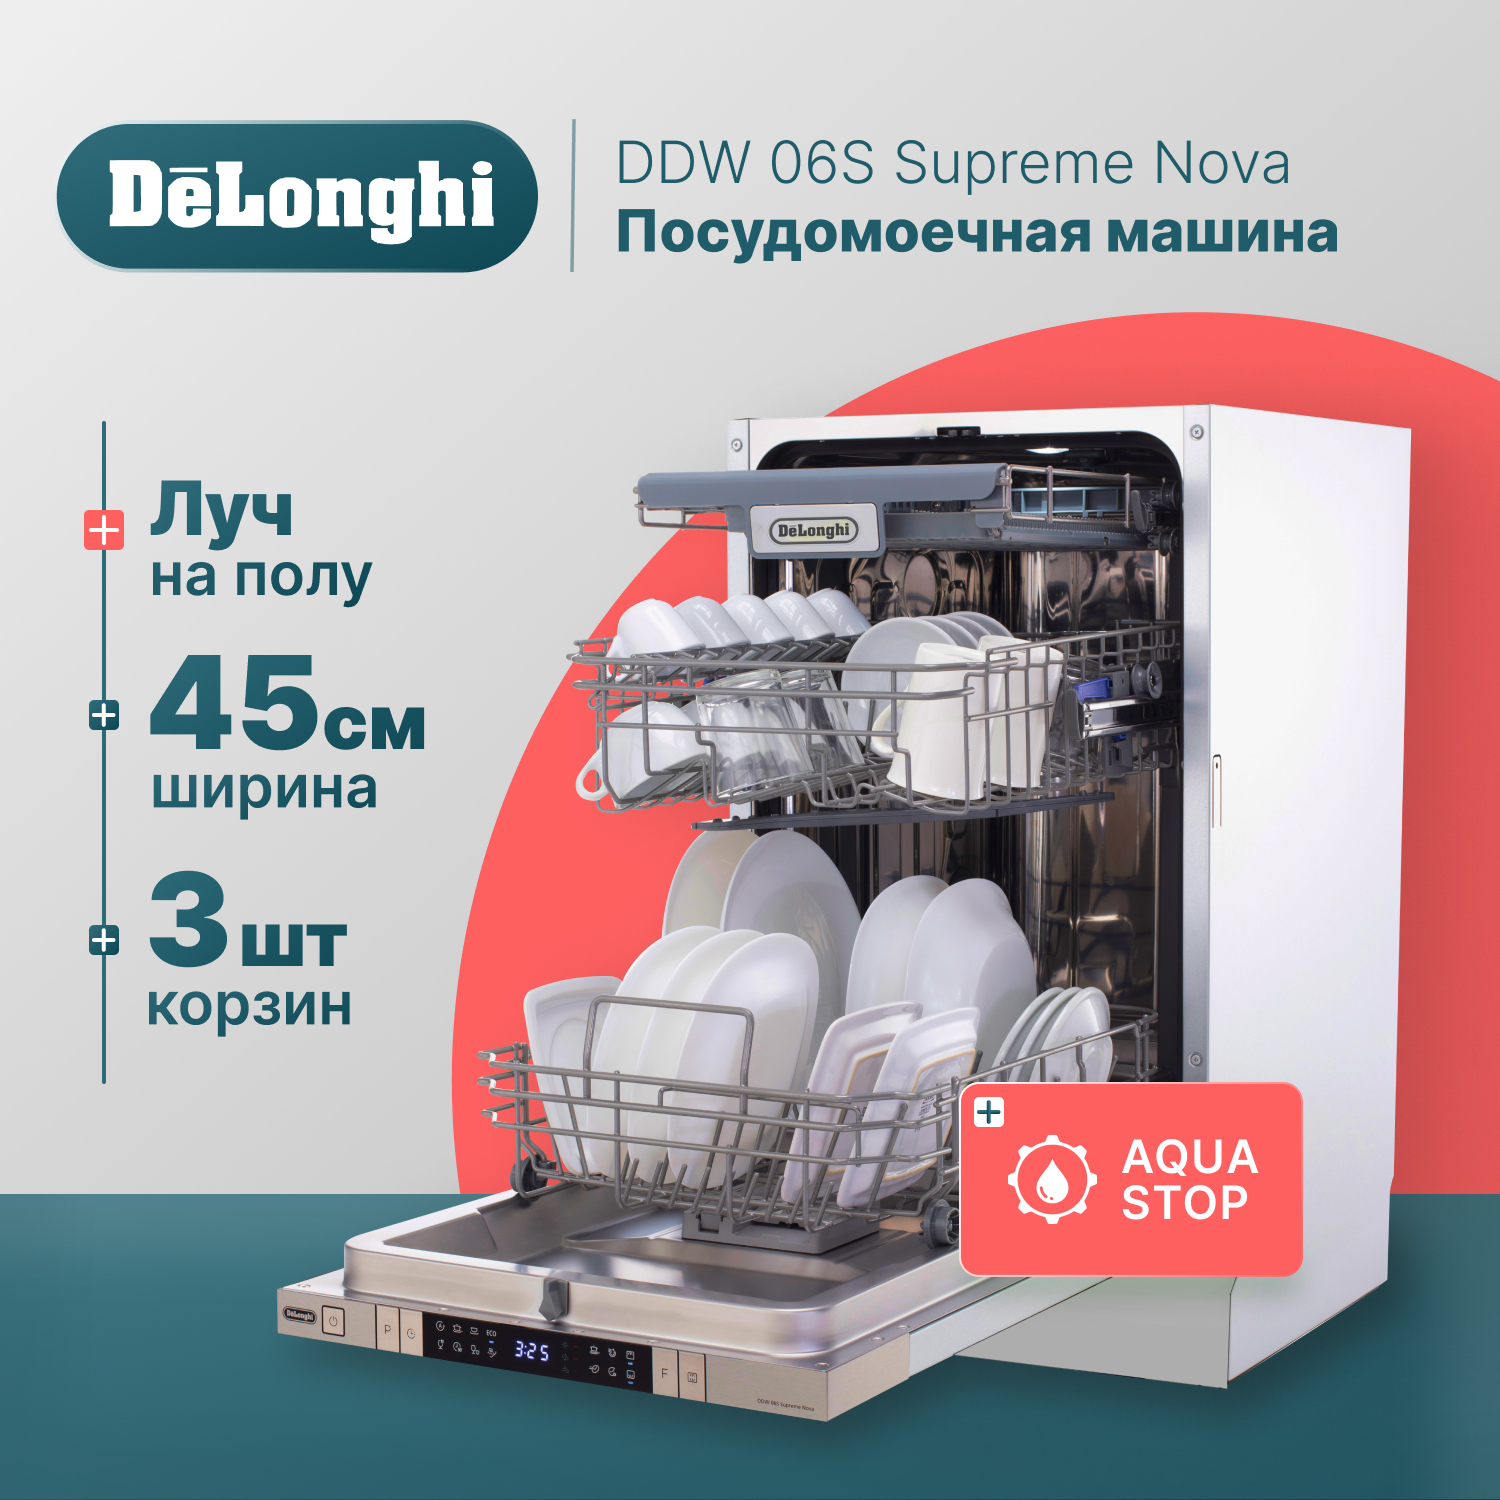 Встраиваемая посудомоечная машина Delonghi DDW06S Supreme Nova встраиваемая посудомоечная машина delonghi ddw06f granate platinum